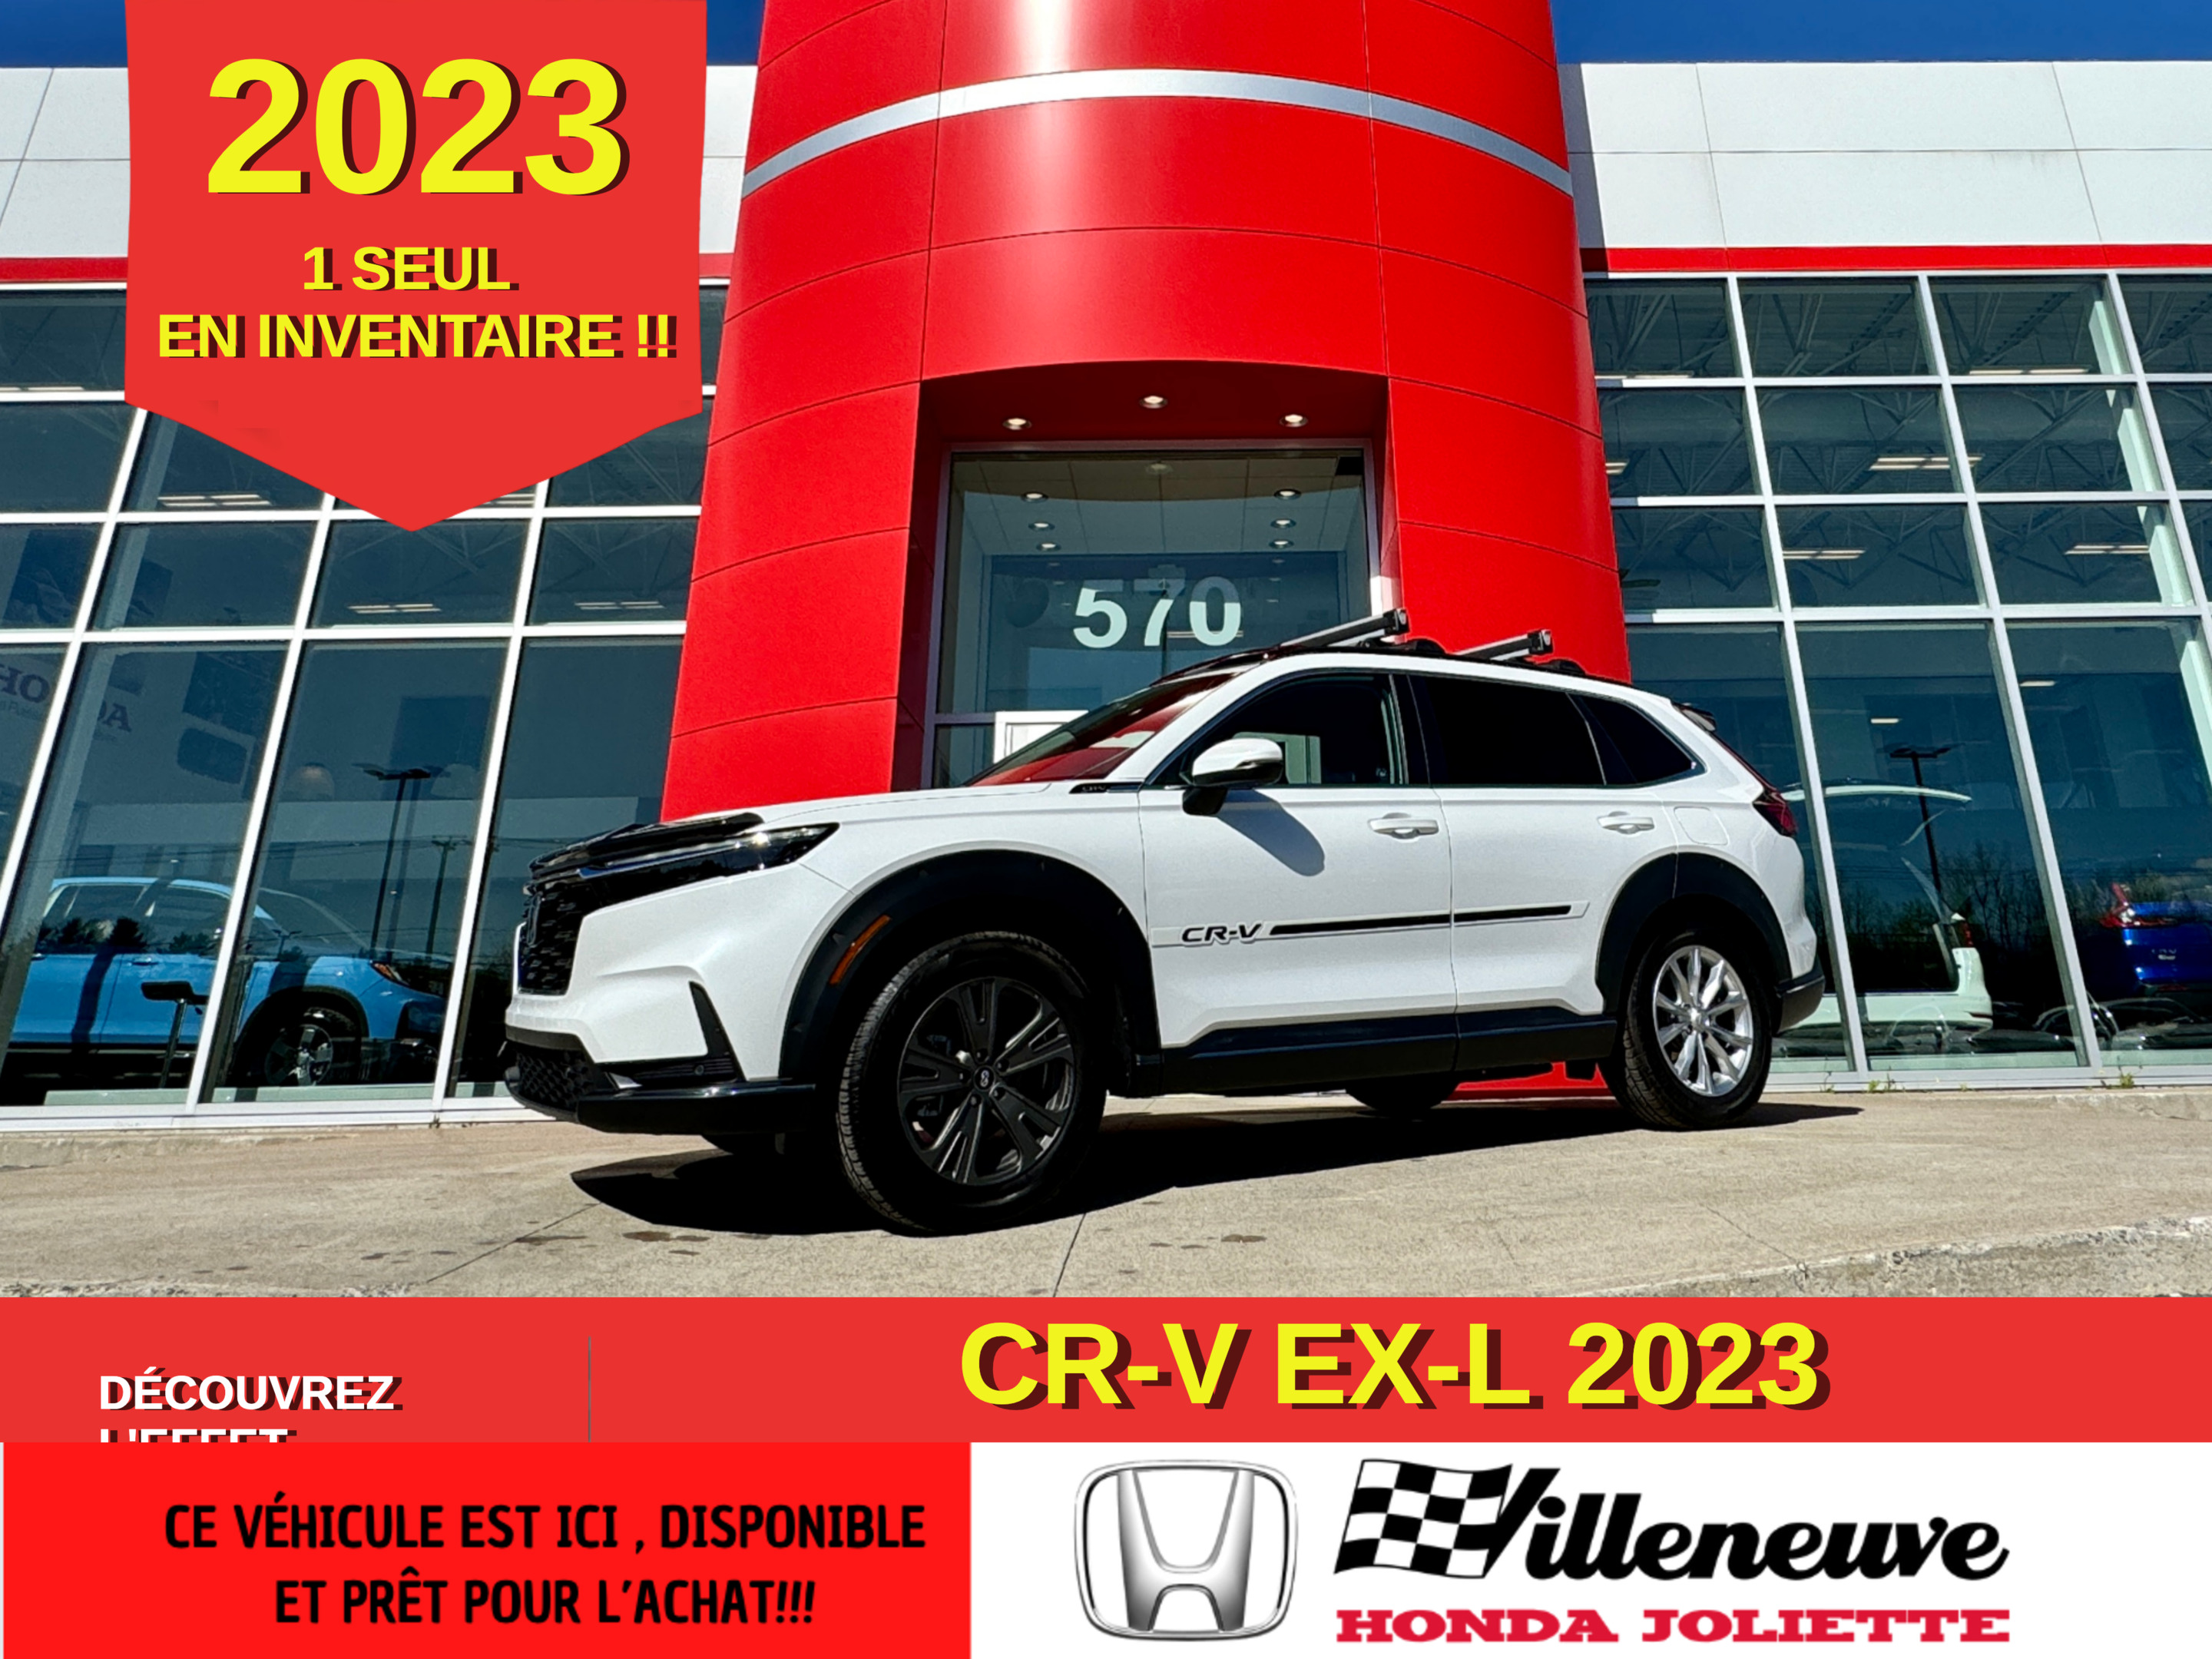 2023 Honda CR-V EX-L Liquidation 2023 !!! / Liquidation 2023 !